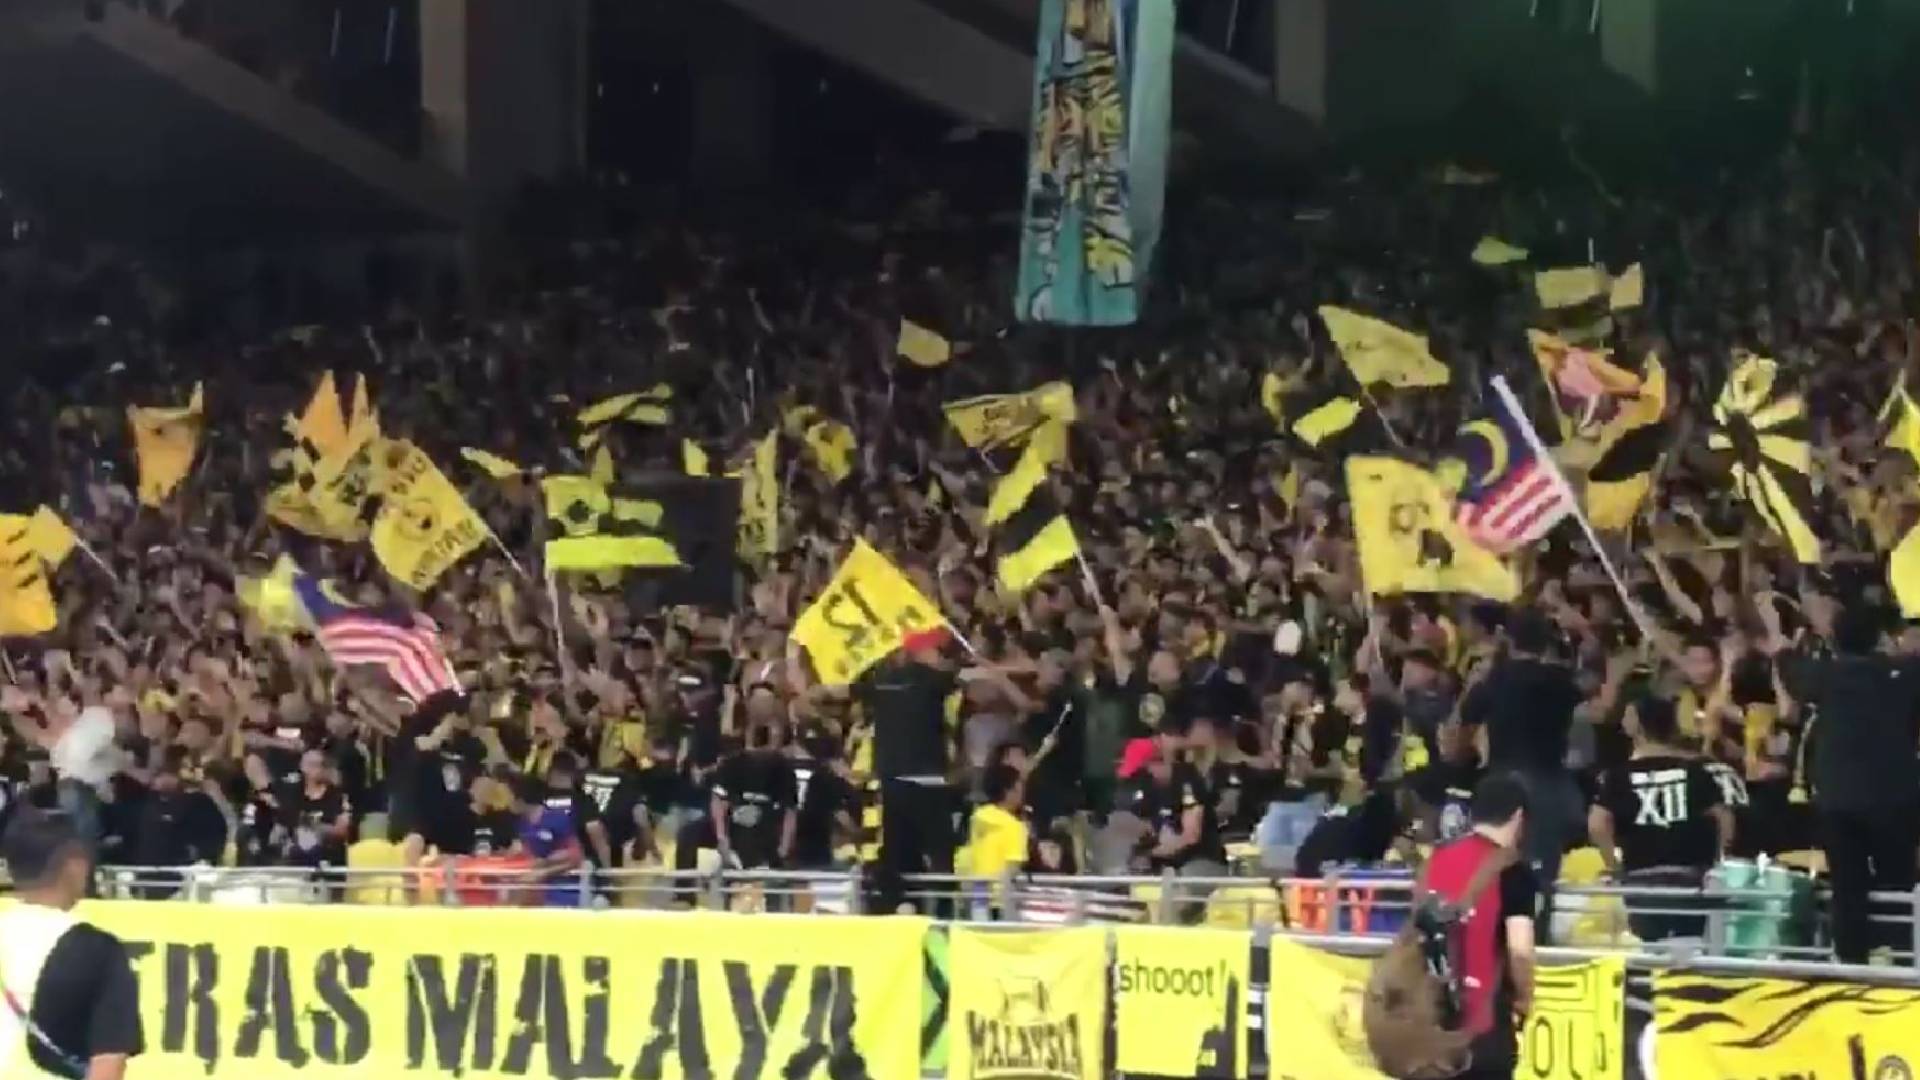 ultras malaya 1 90 Minit Yang Digeruni Lawan - Ultras Malaya